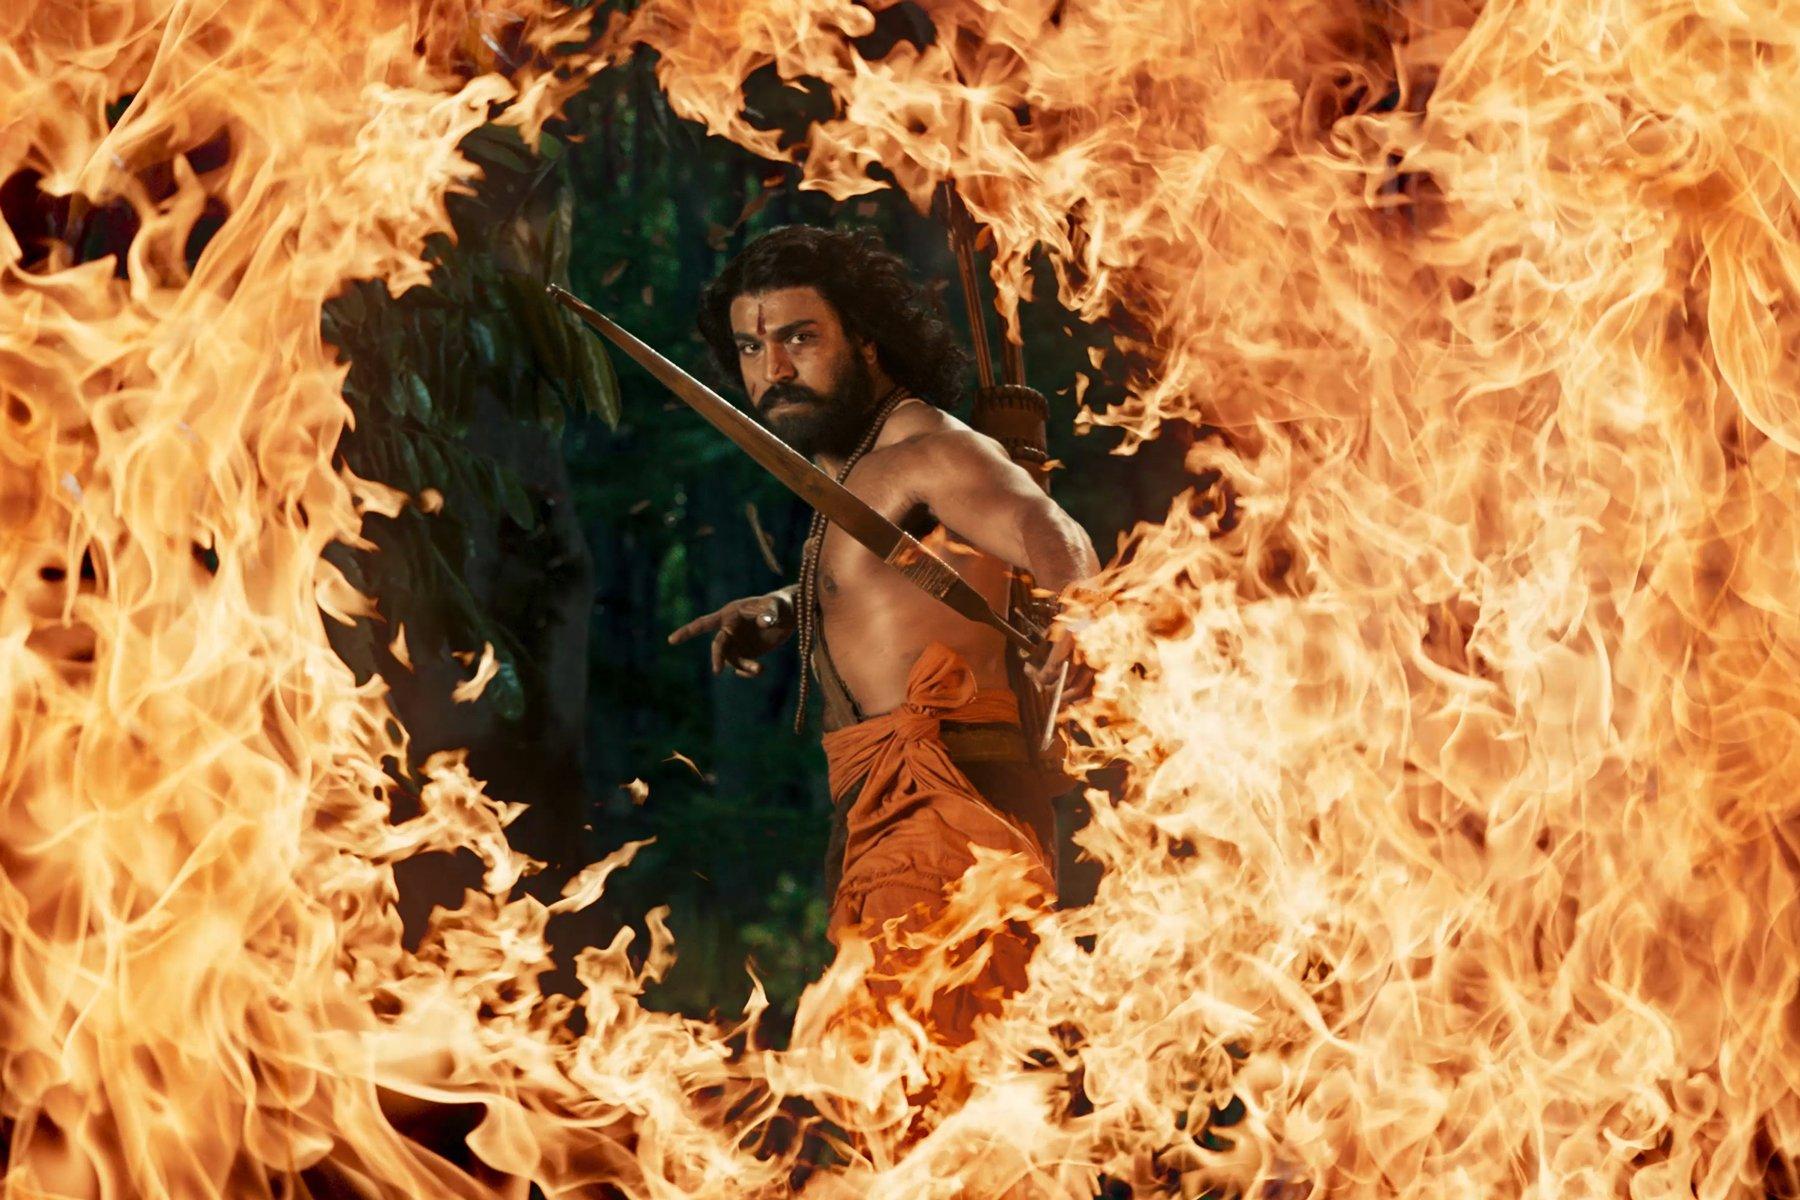 Kadr z filmu „RRR”, przedstawiający półnagiego mężczyznę z łukiem, którego postać otoczona jest ogniem.